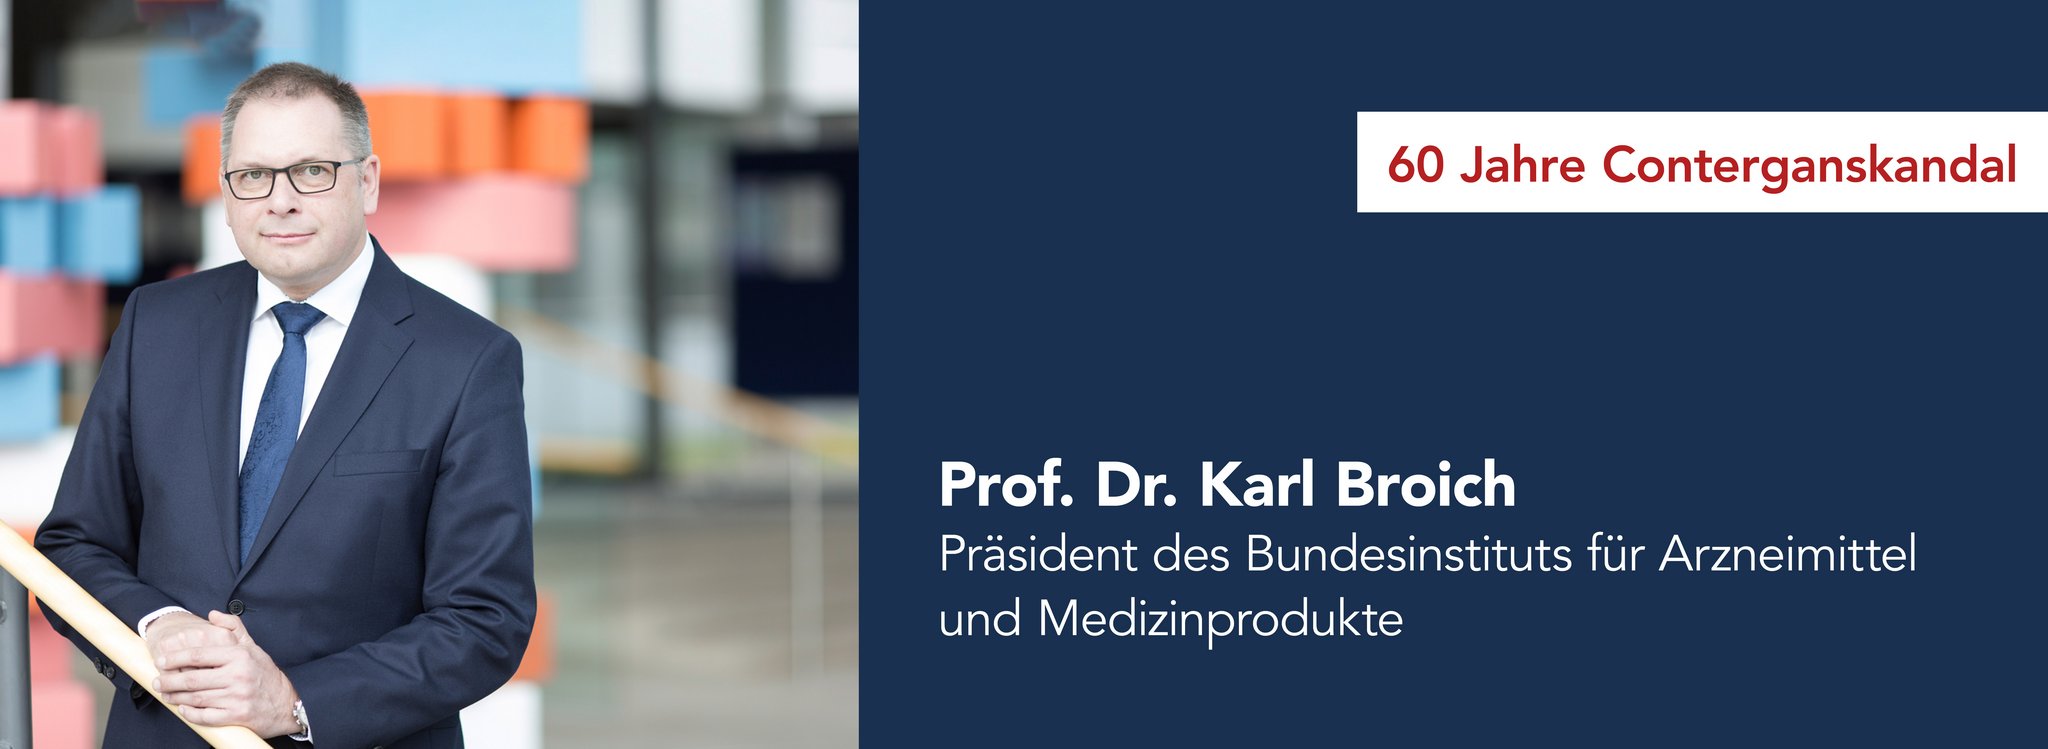 Das Bild zeigt Prof. Dr. Karl Broich Präsident des Bundesinstituts für Arzneimittel und Medizinprodukte